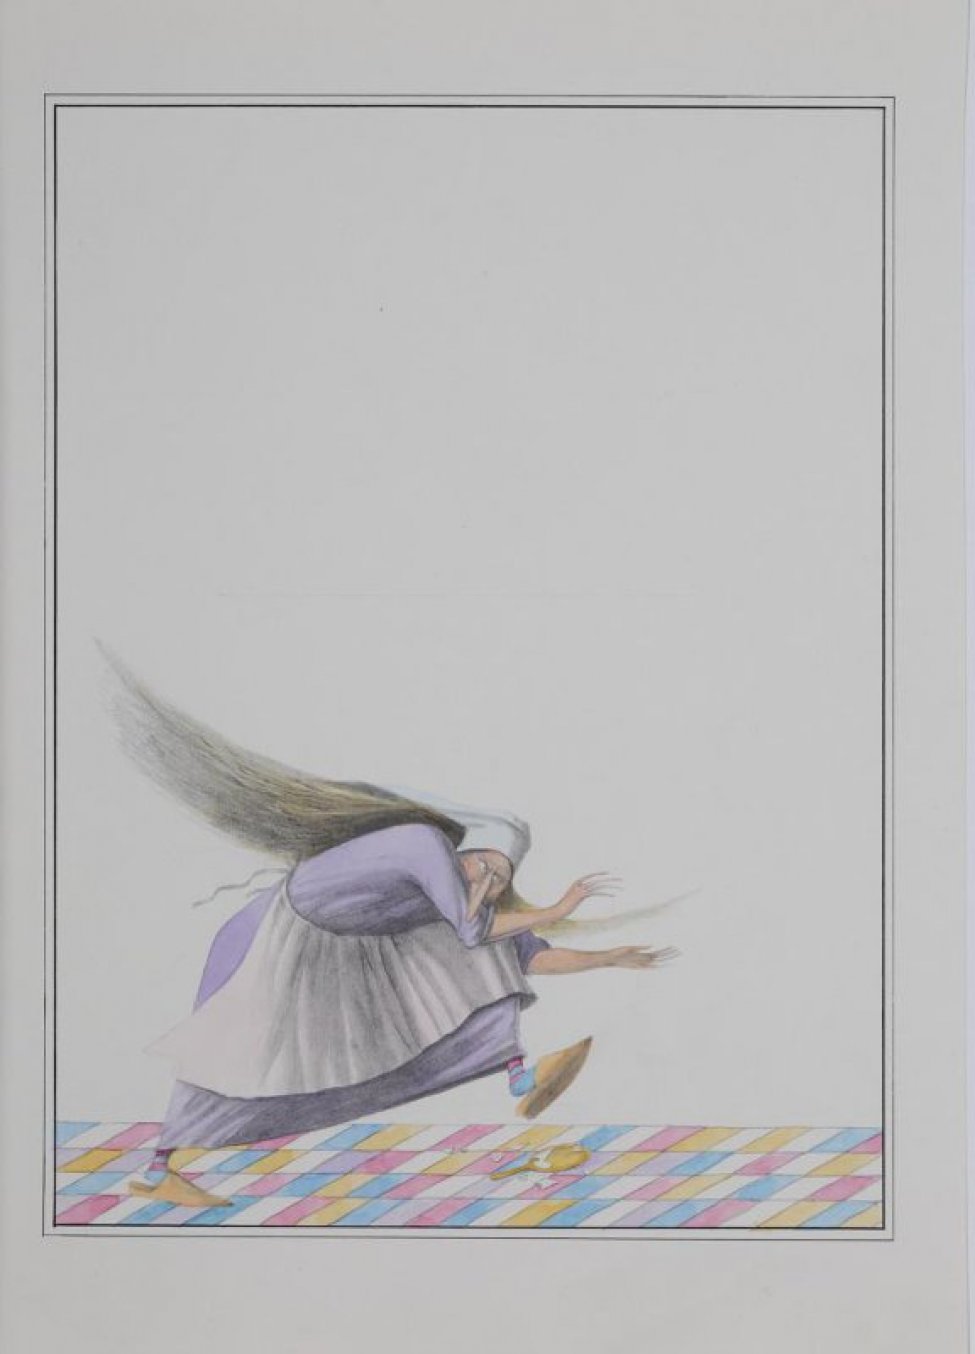 Изображена бегущая по цветному паркету растрепанная женщина в сиреневом длинном платье, светлом переднике; внизу разбитое зеркало.